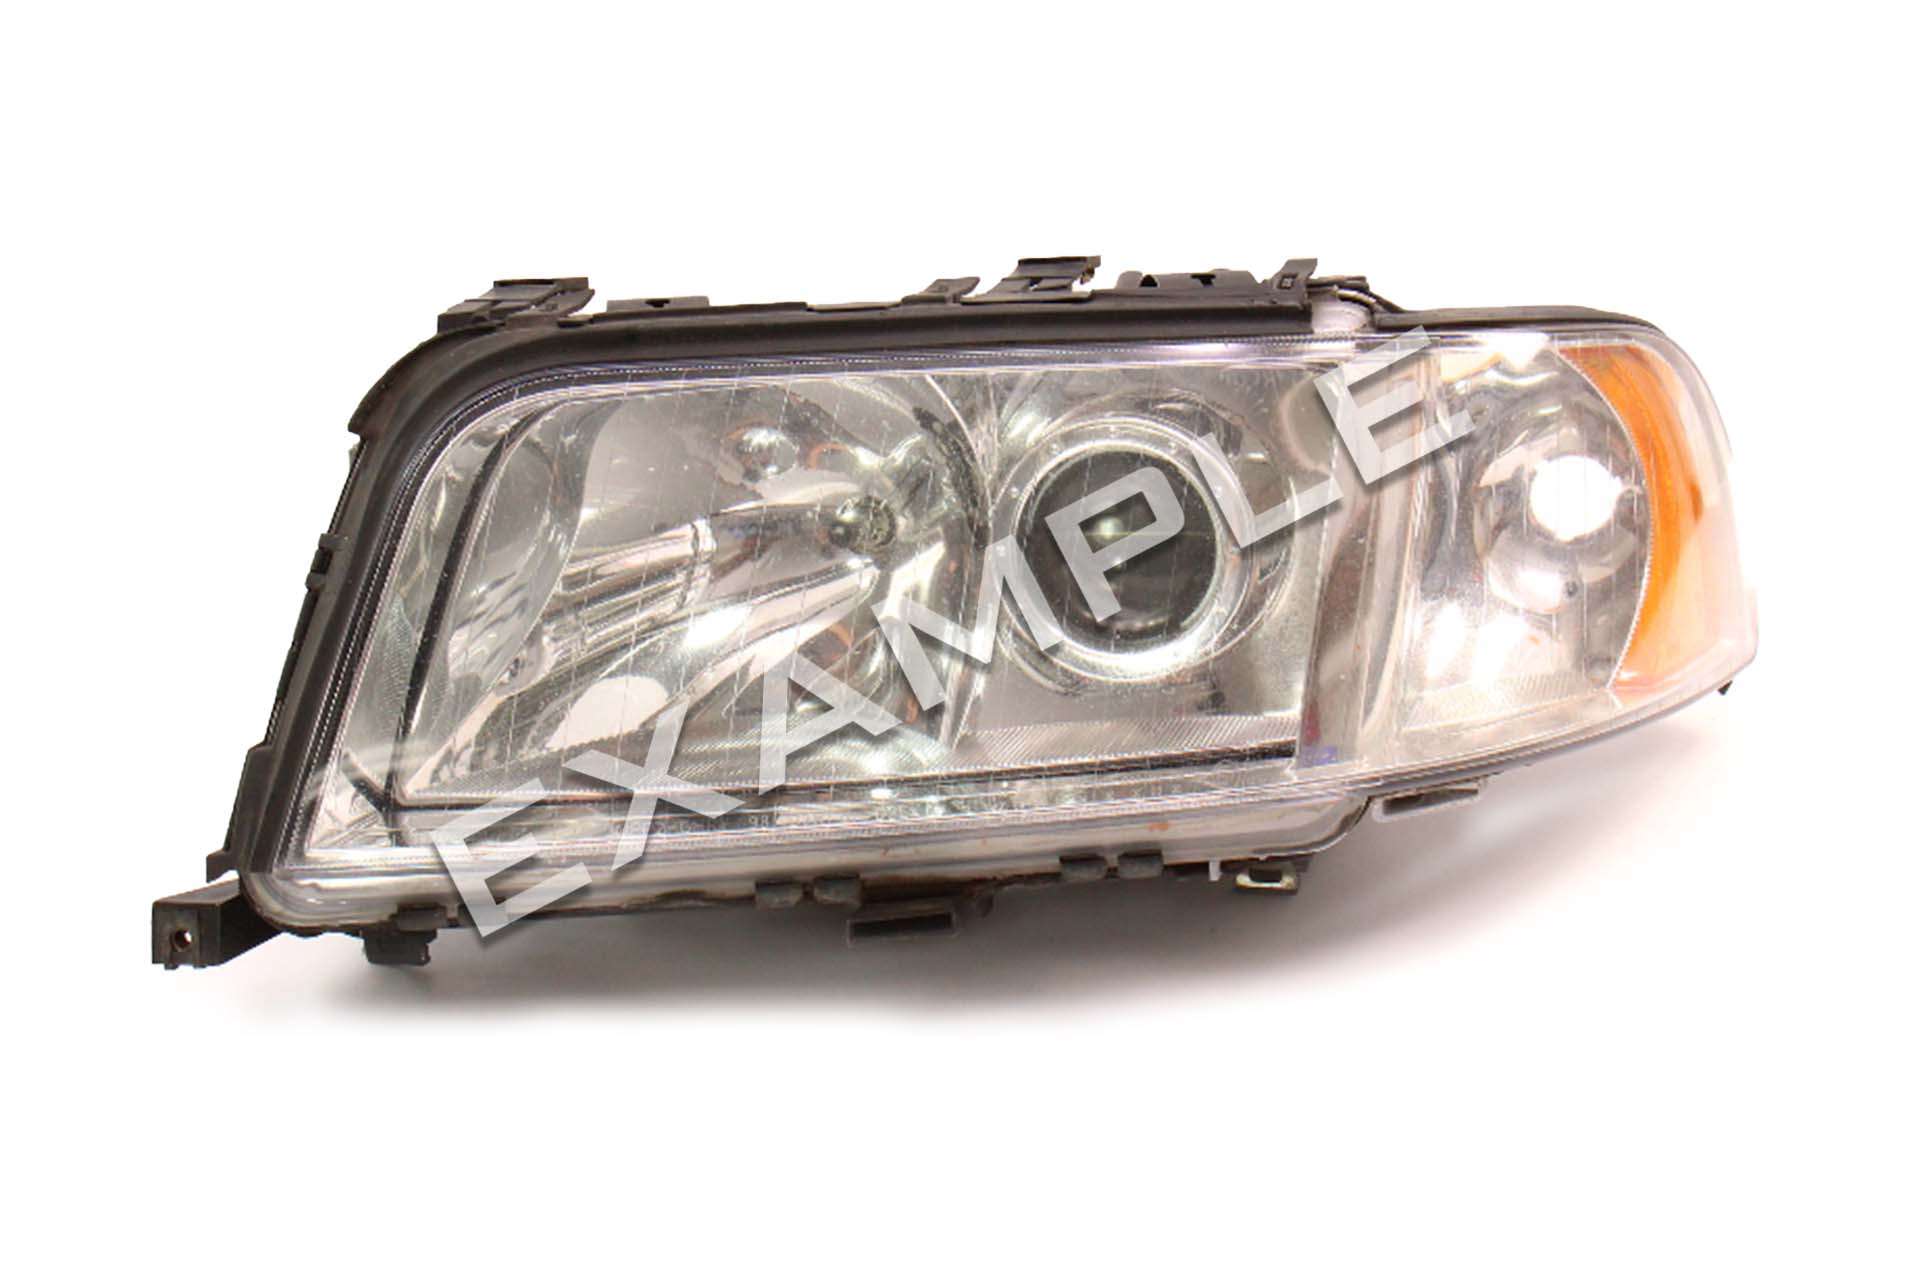 Audi A8 D2 99-02 bi-xenon headlight repair & upgrade kit for xenon HID headlights